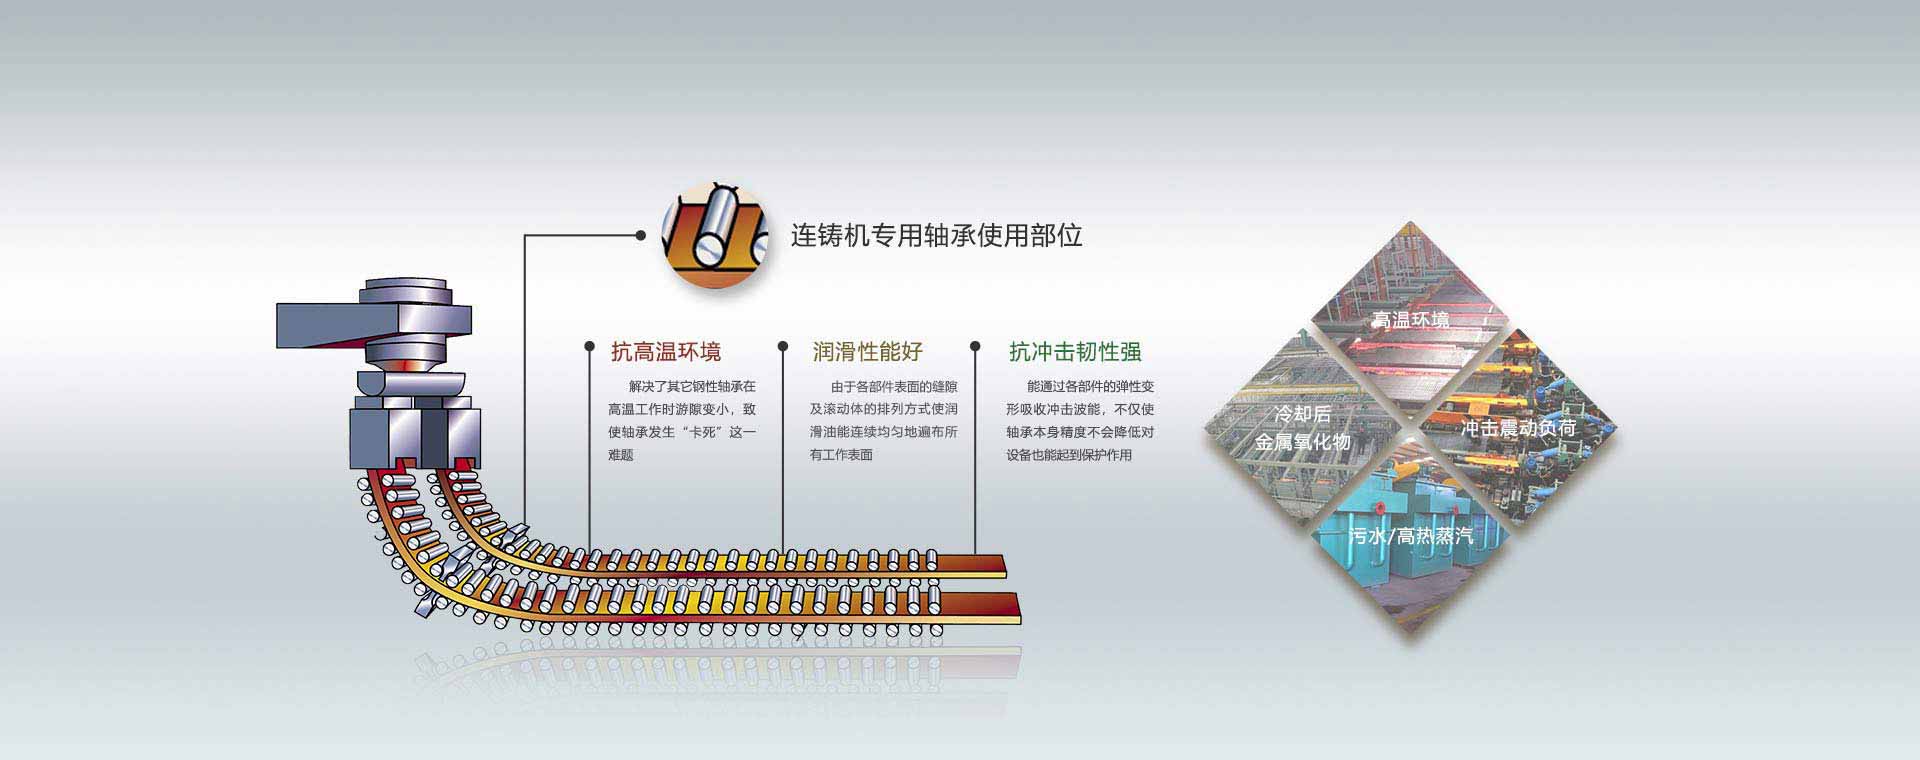 关于当前产品49619澳彩金牛版·(中国)官方网站的成功案例等相关图片